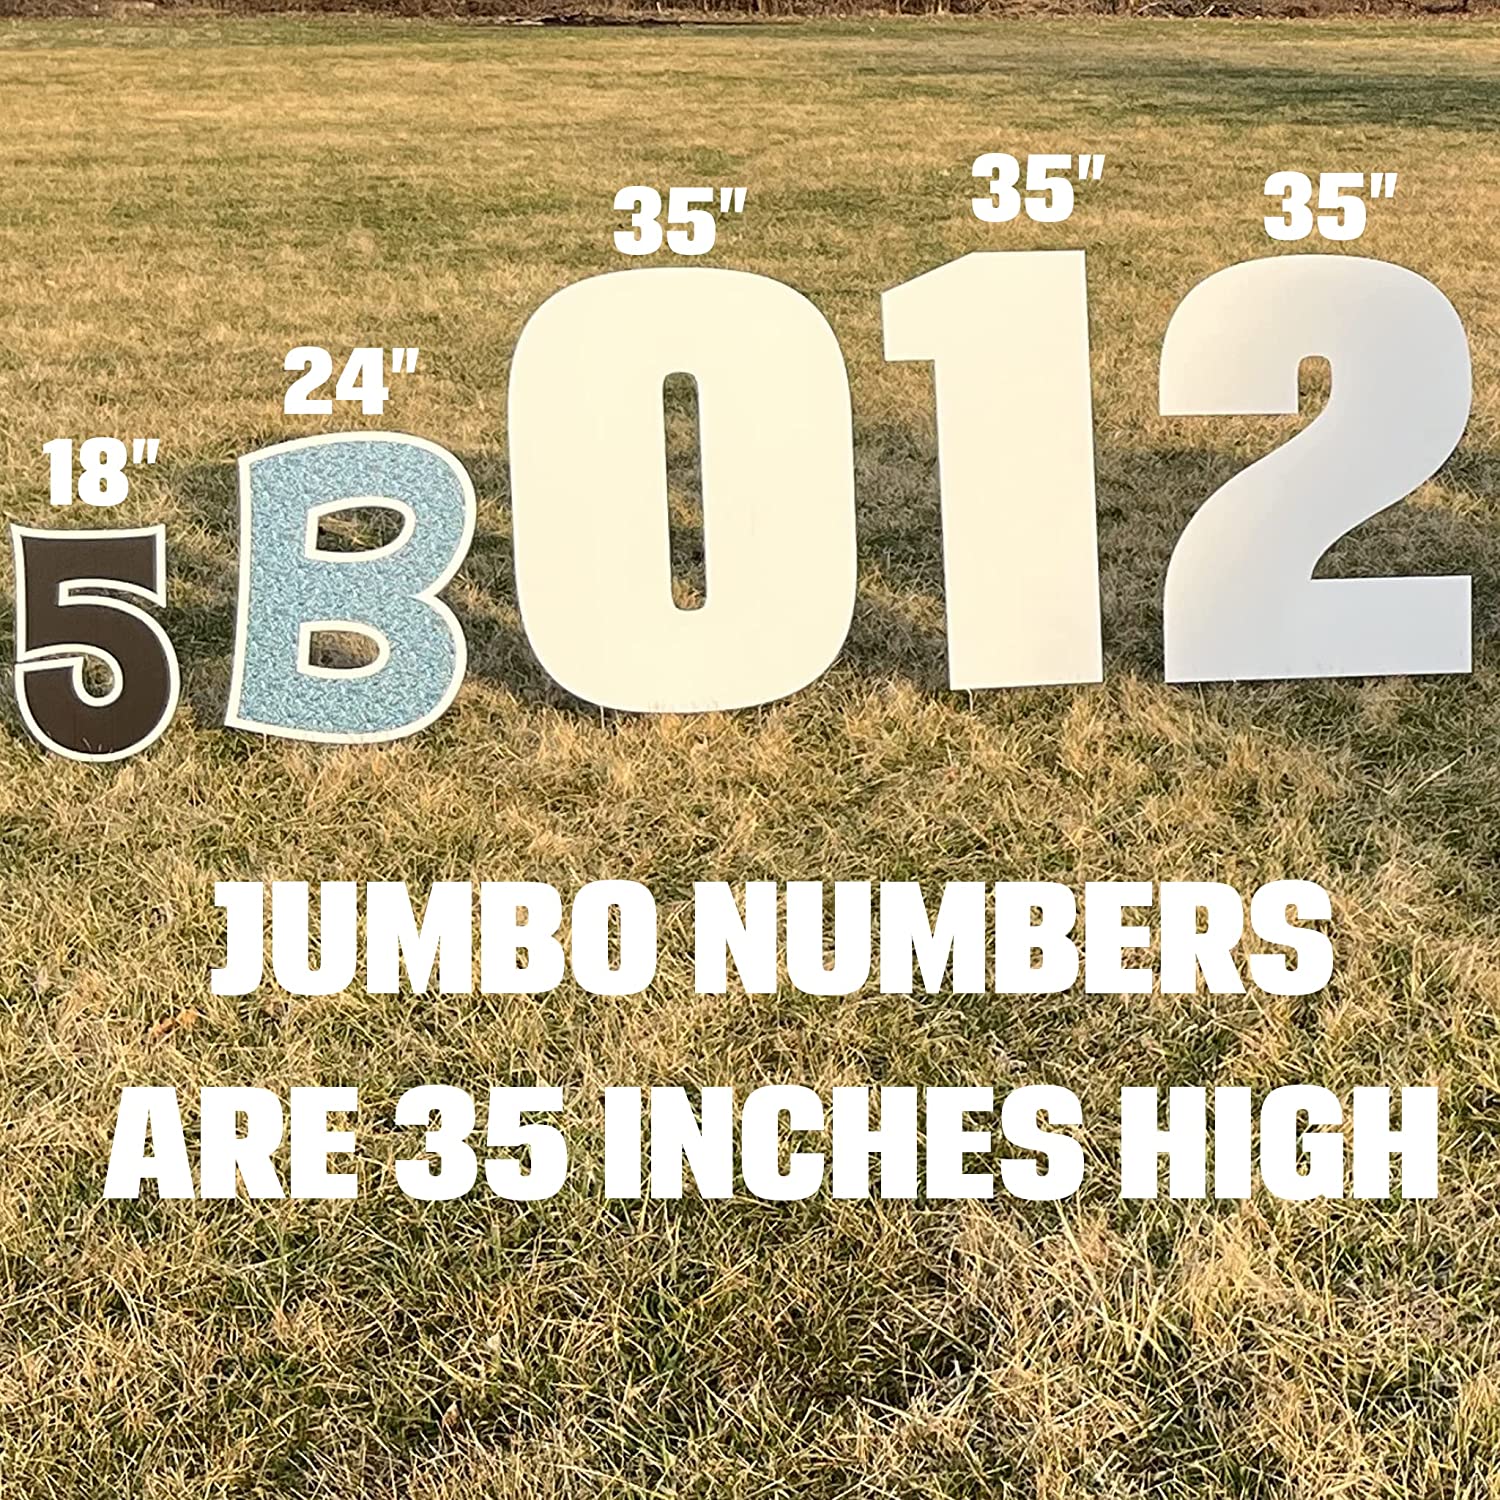 Jumbo 35" Breuer Sparkle Yard Sign Numbers